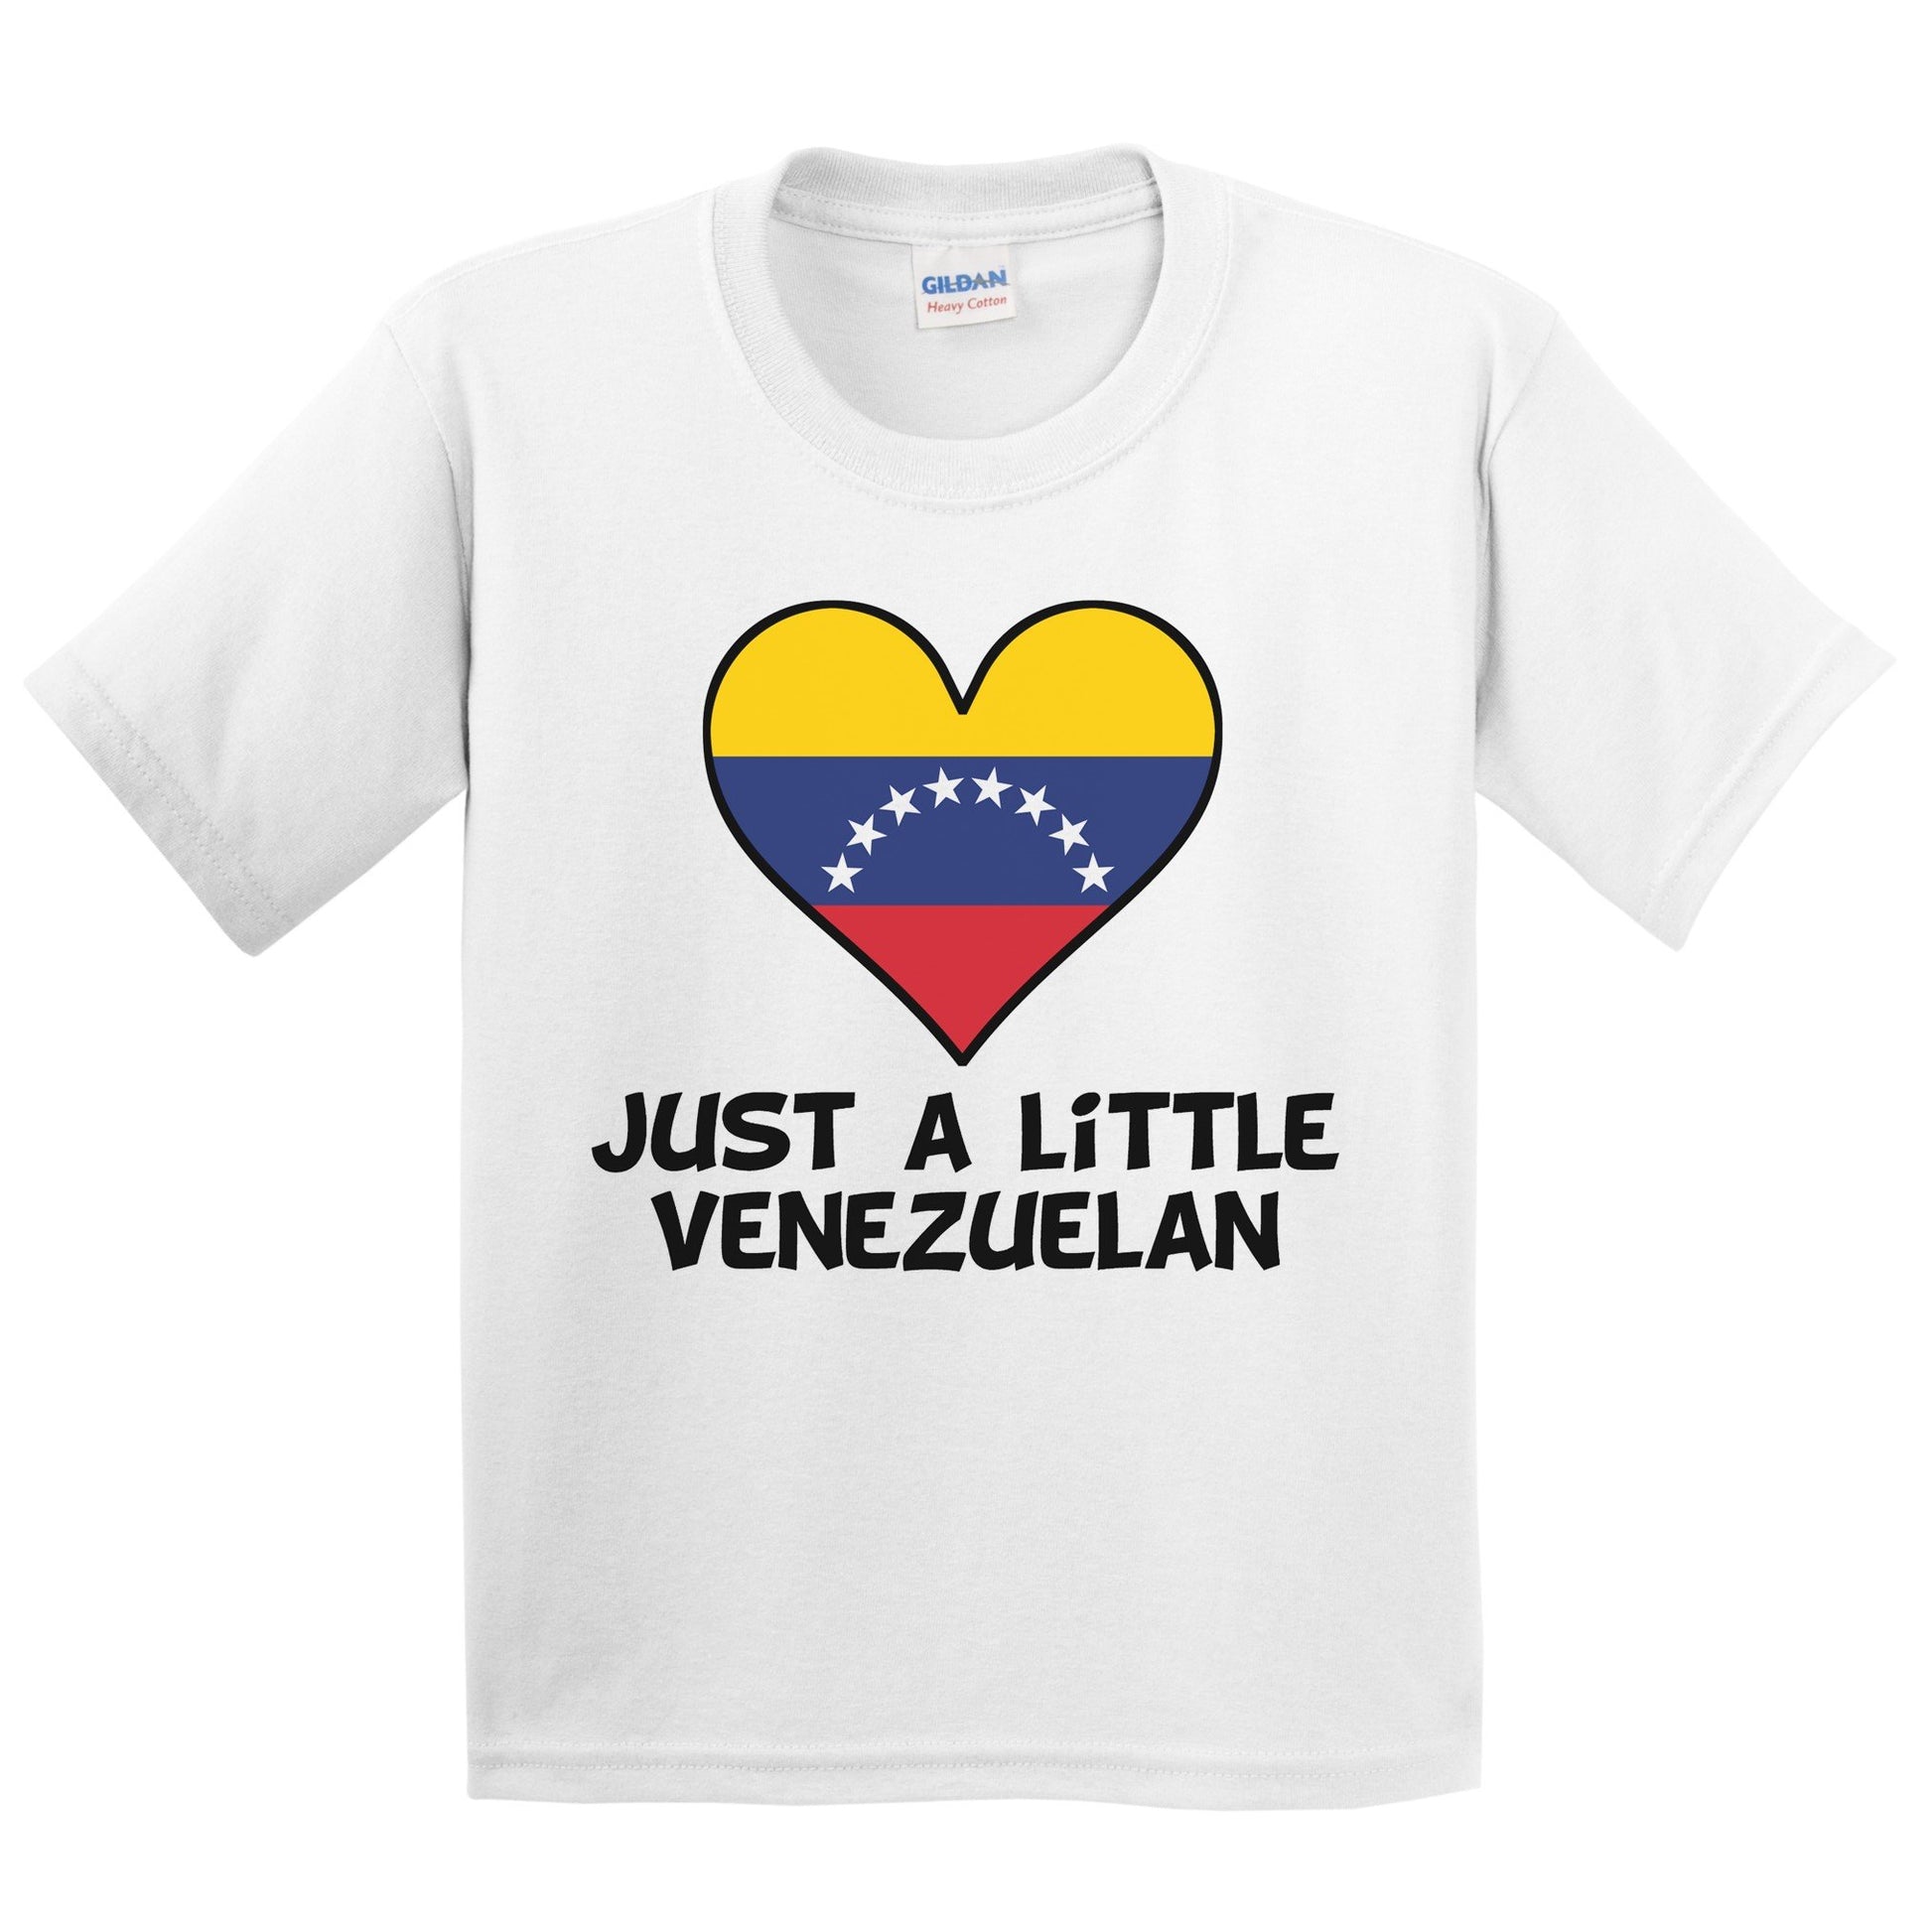 Just A Little Venezuelan T-Shirt - Funny Venezuela Flag Kids Youth Shirt